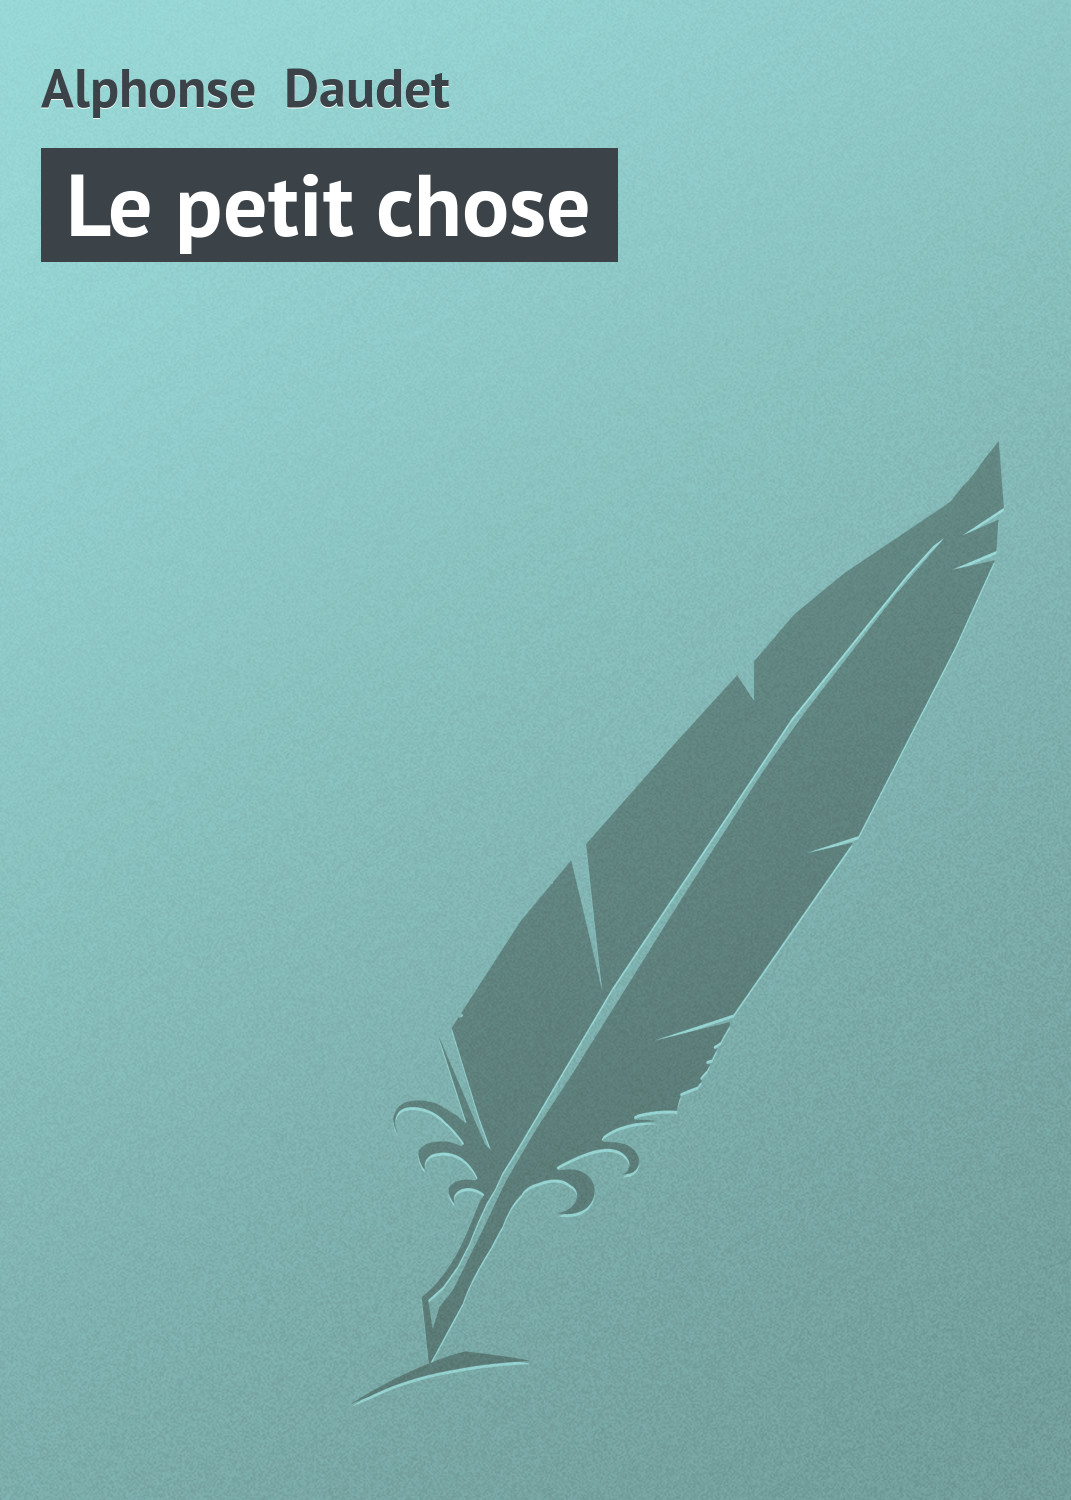 Книга Le petit chose из серии , созданная Alphonse Daudet, может относится к жанру Зарубежная старинная литература, Зарубежная классика. Стоимость электронной книги Le petit chose с идентификатором 21104670 составляет 5.99 руб.